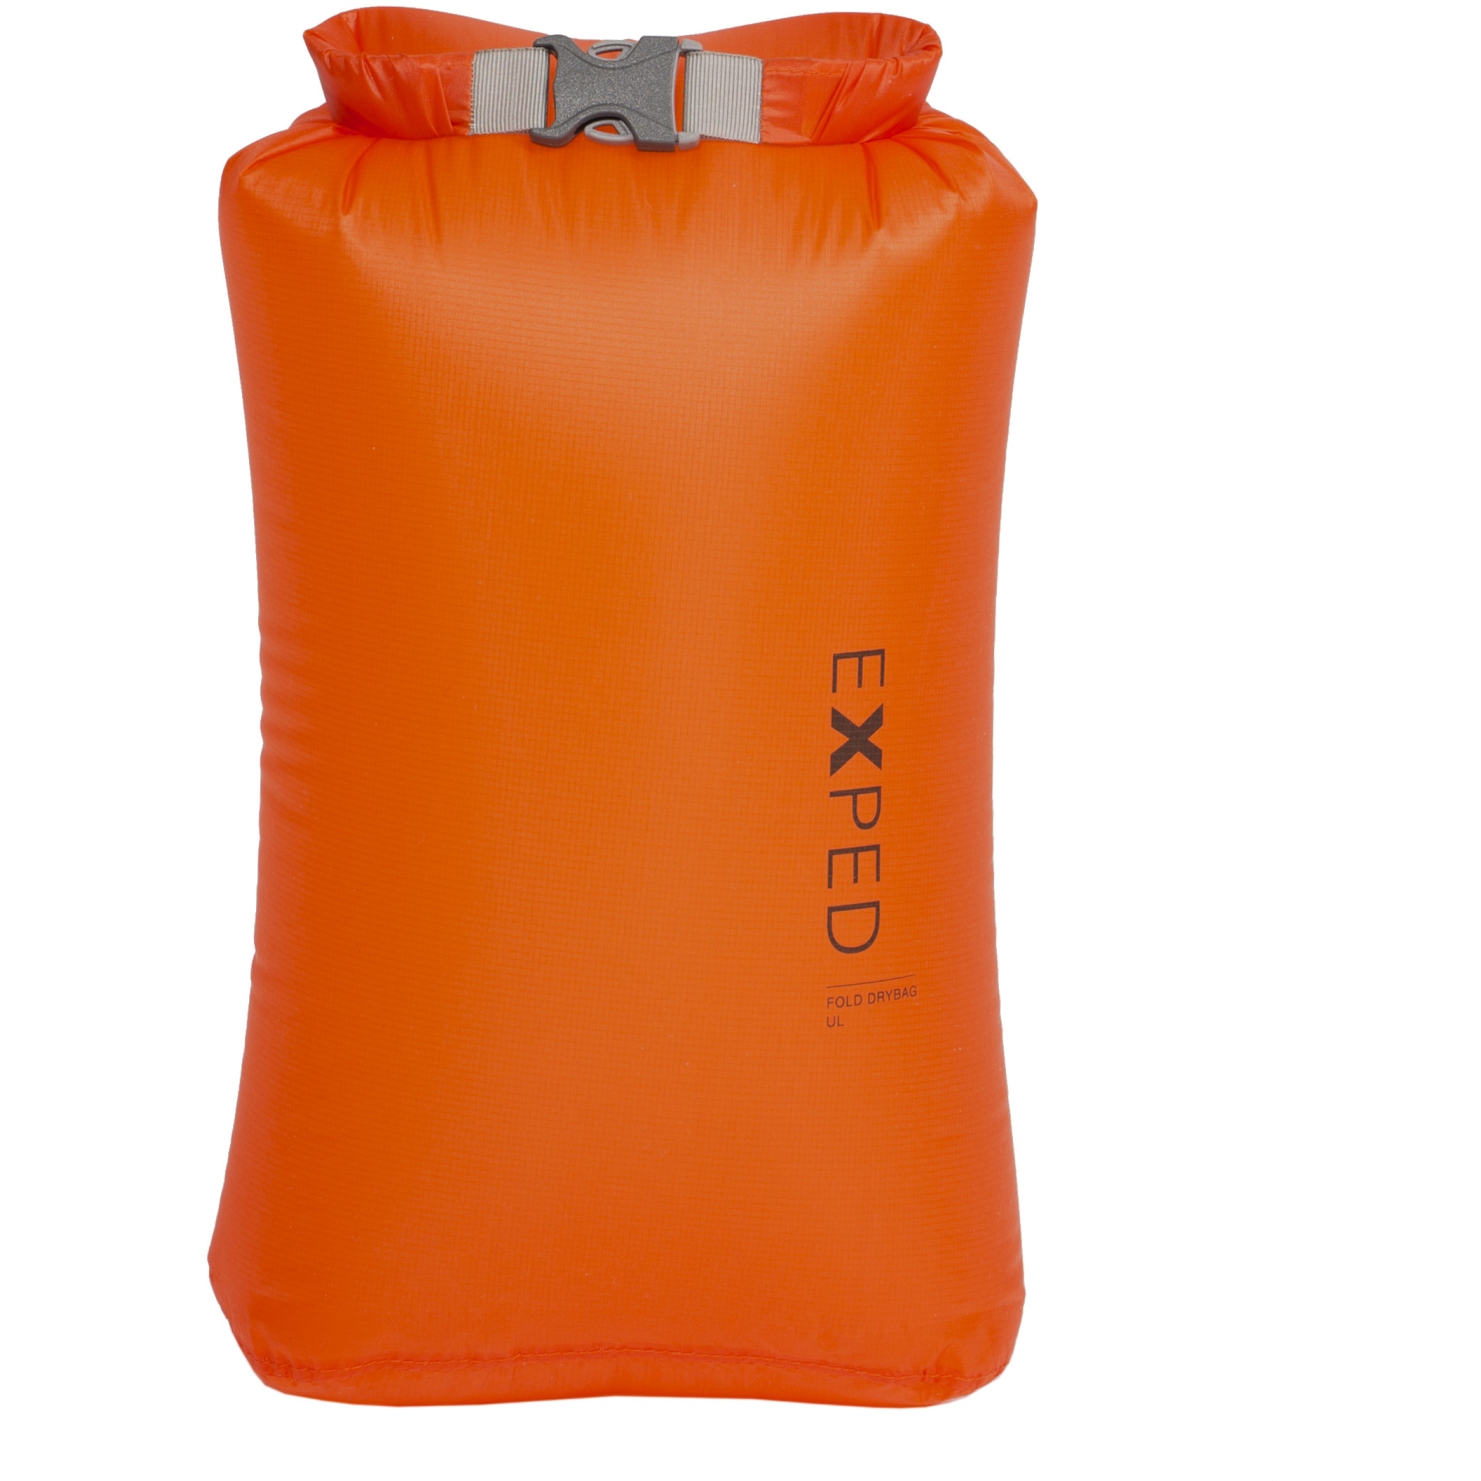 Immagine prodotto da Exped Sacca Stagna - Fold Drybag UL - XS - arancione